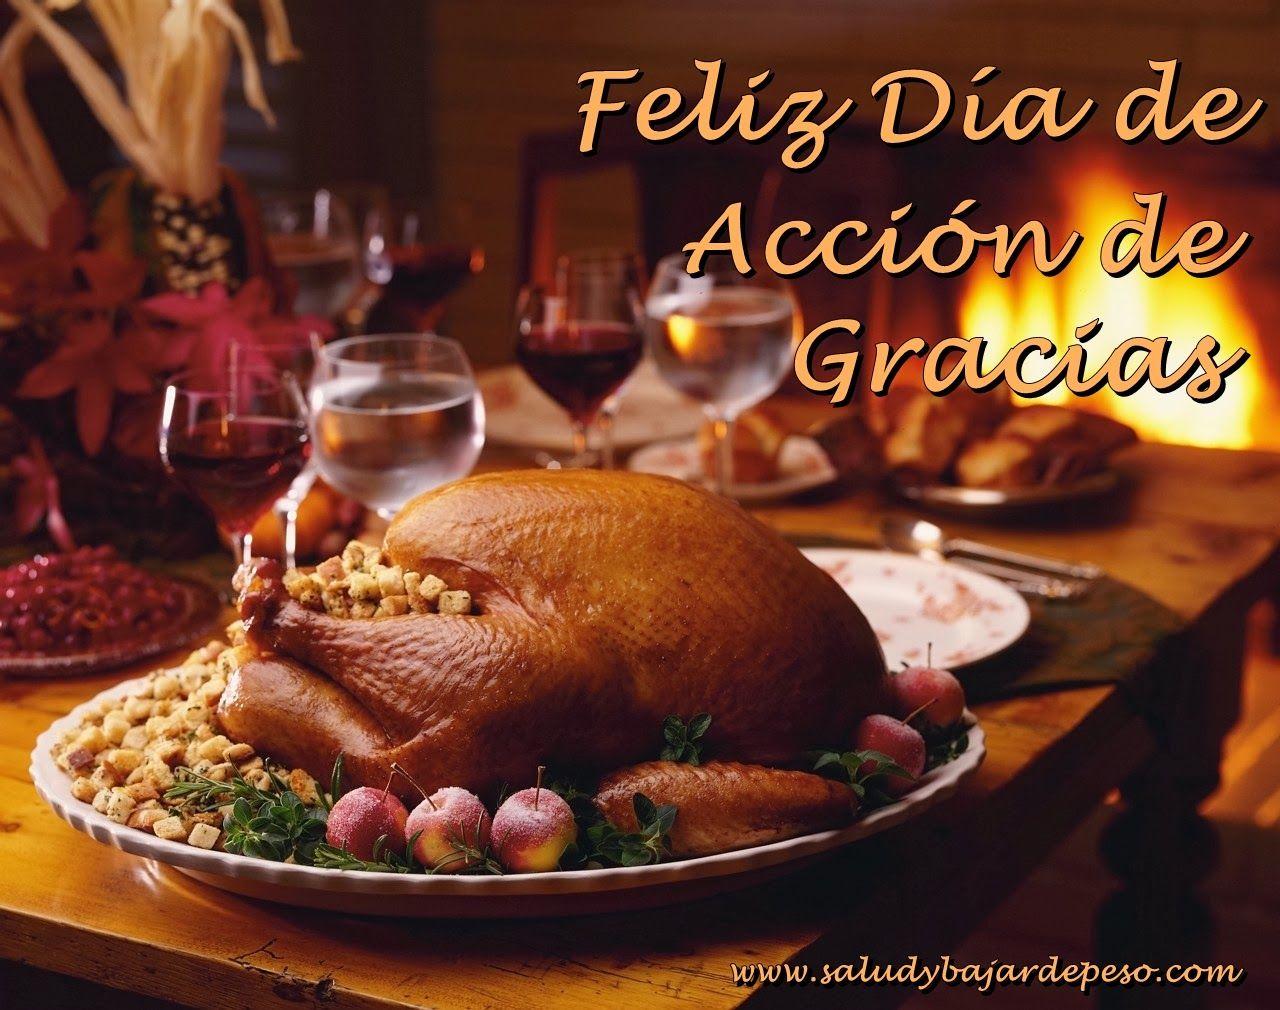 Frases en Imágenes para Facebook: Dia de Accion de Gracias